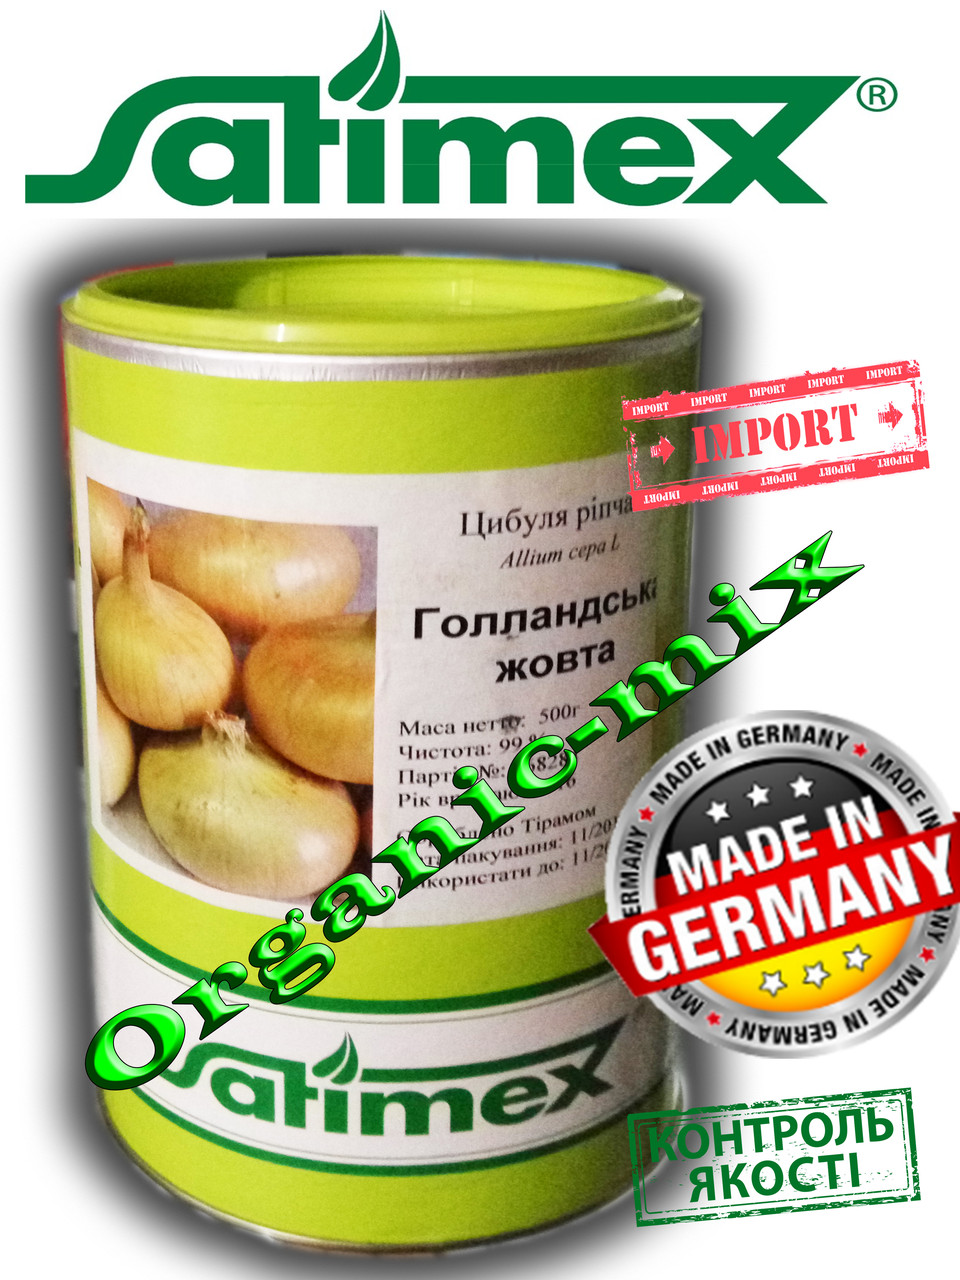 Насіння лука голландський жовтий, оброблене Тирамом, 500 грамів банку, Satex (Німеччина)